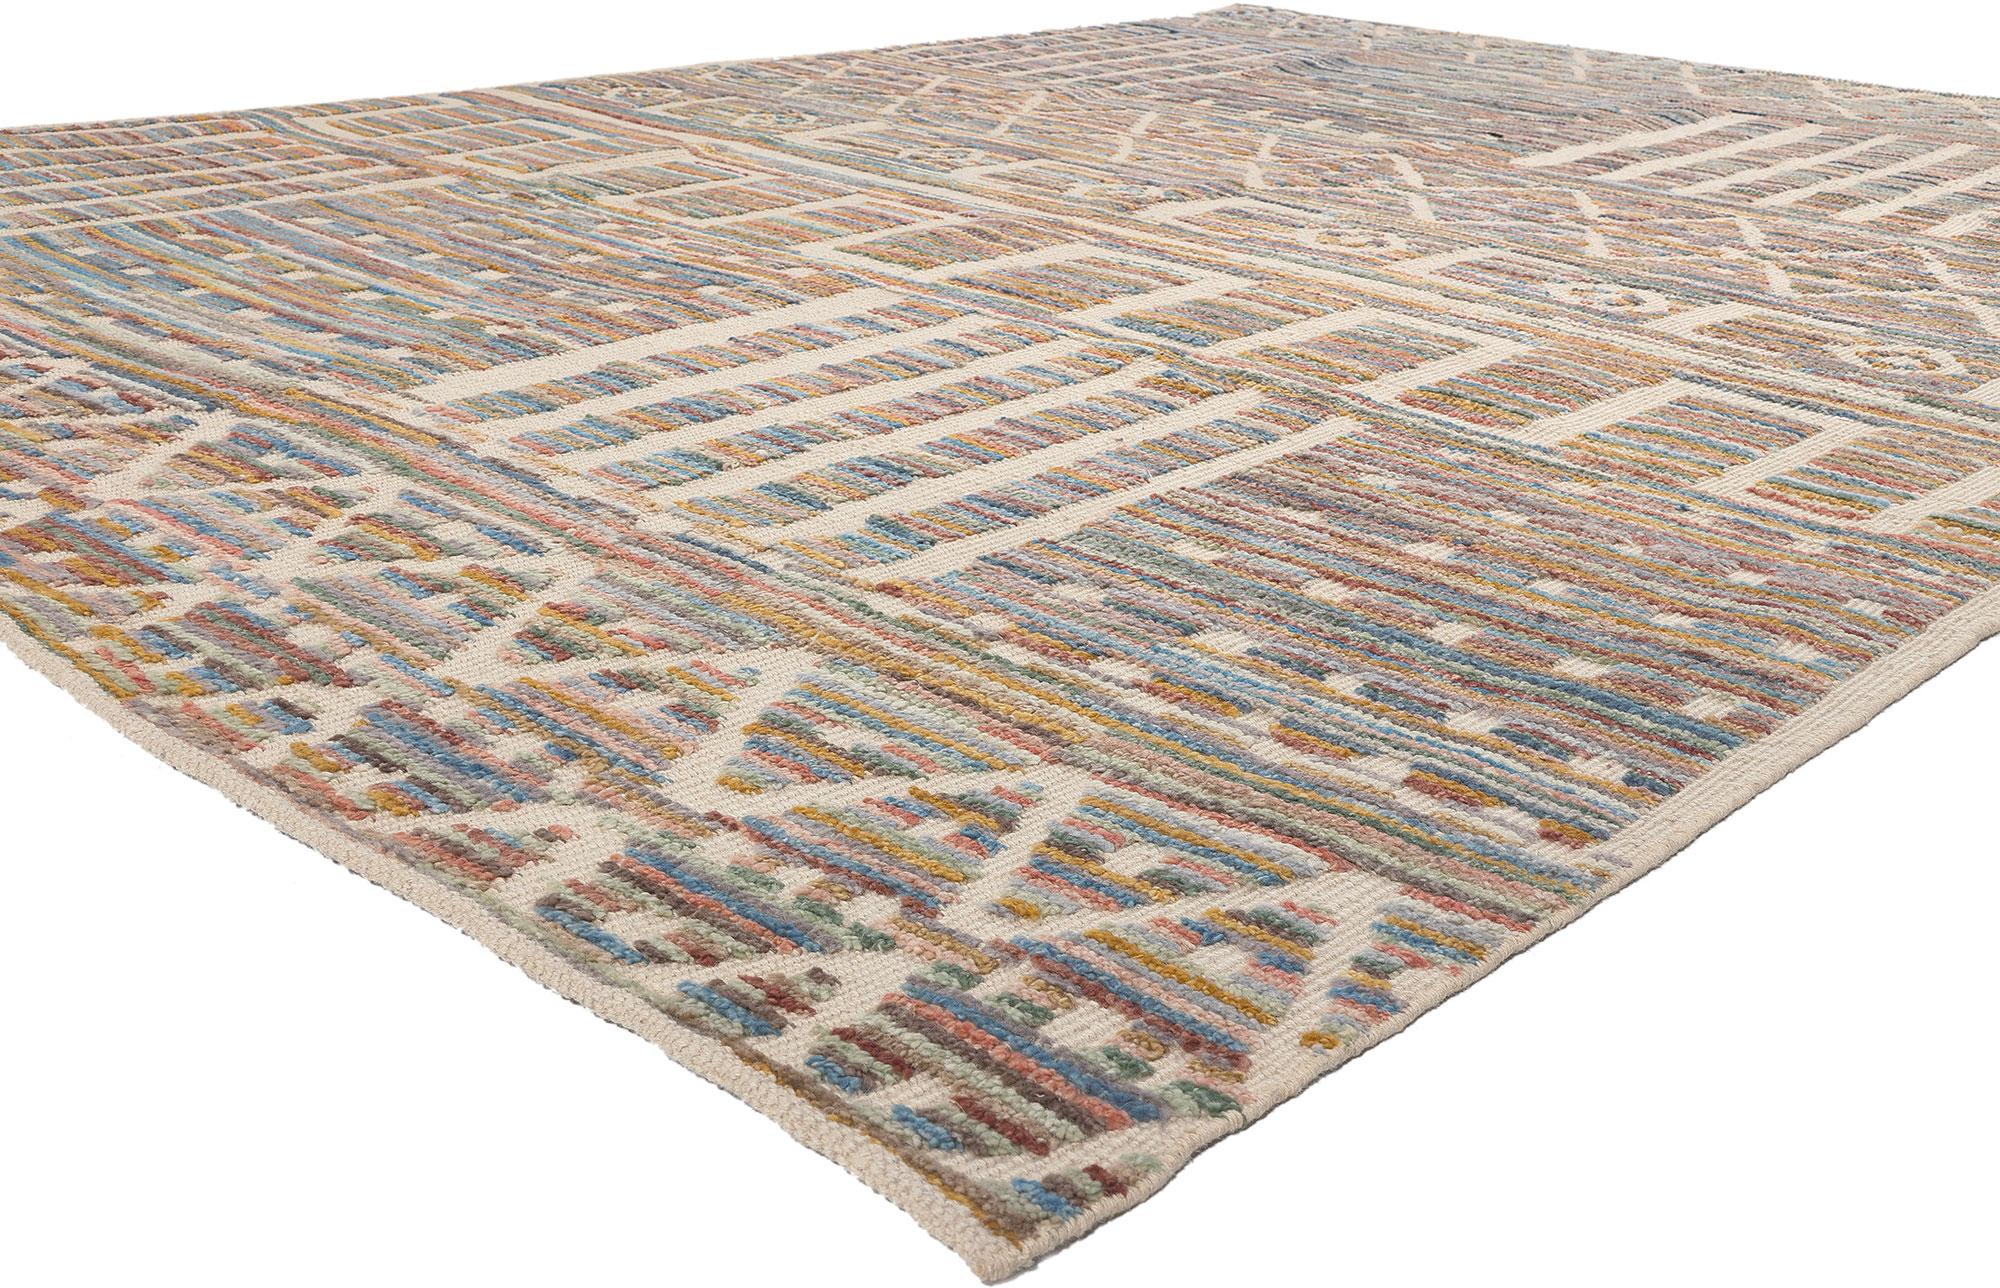 80995 Bunter moderner marokkanischer Teppich, 08'09 x 12'03. Boho Chic trifft auf Stammeszauber in diesem modernen marokkanischen Teppich aus handgeknüpfter Wolle, in dem sich lebendige Kreativität mit traditioneller Handwerkskunst vermischt. Der